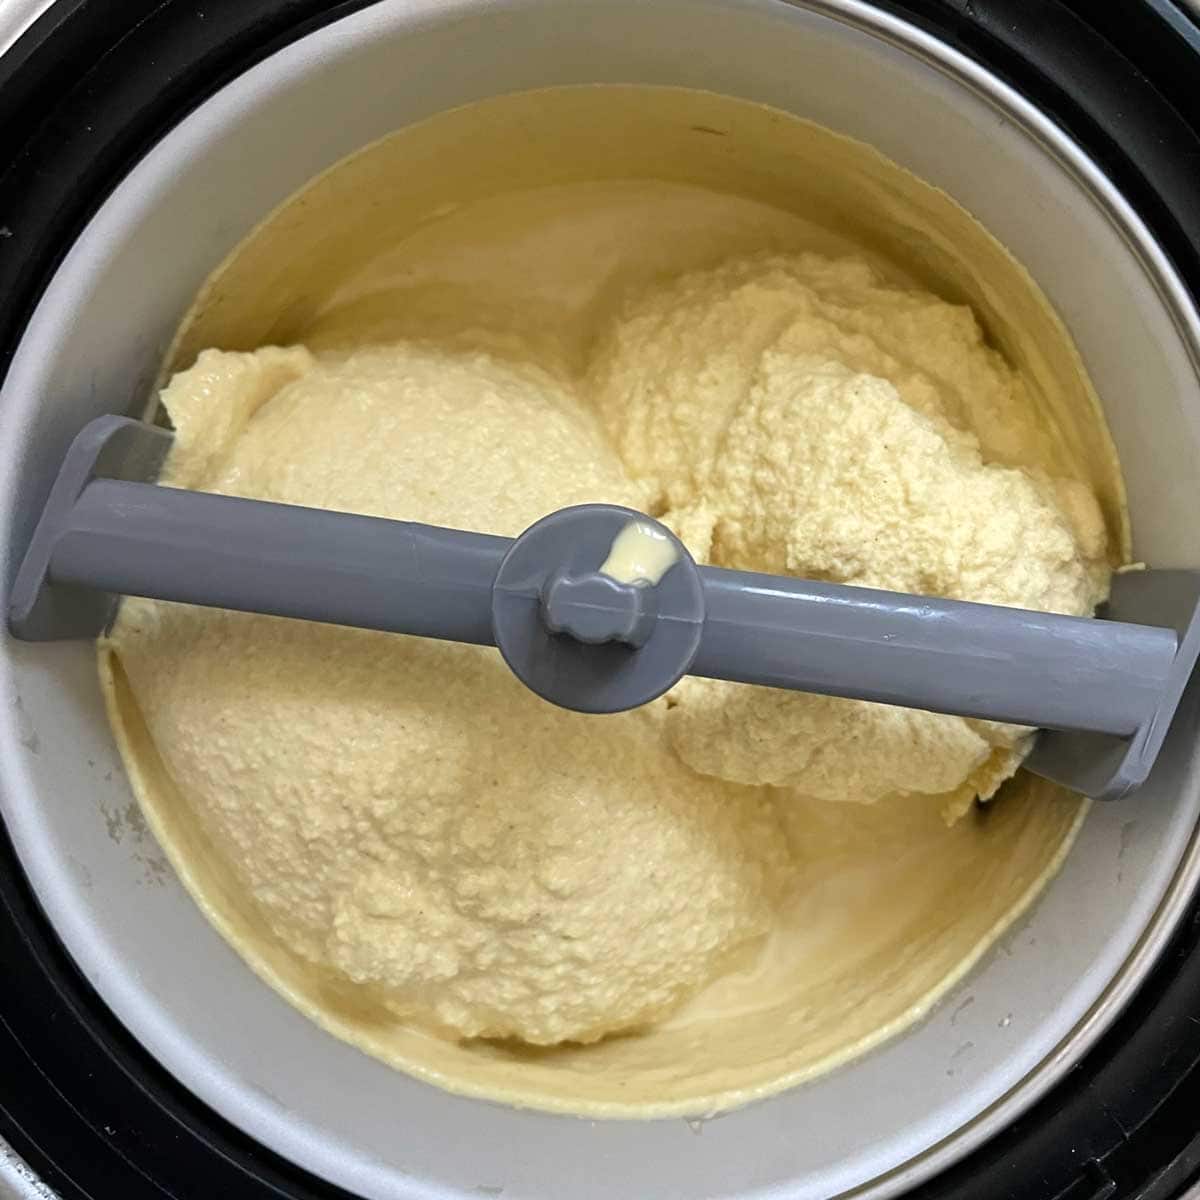 Thandai ice cream mix churning.